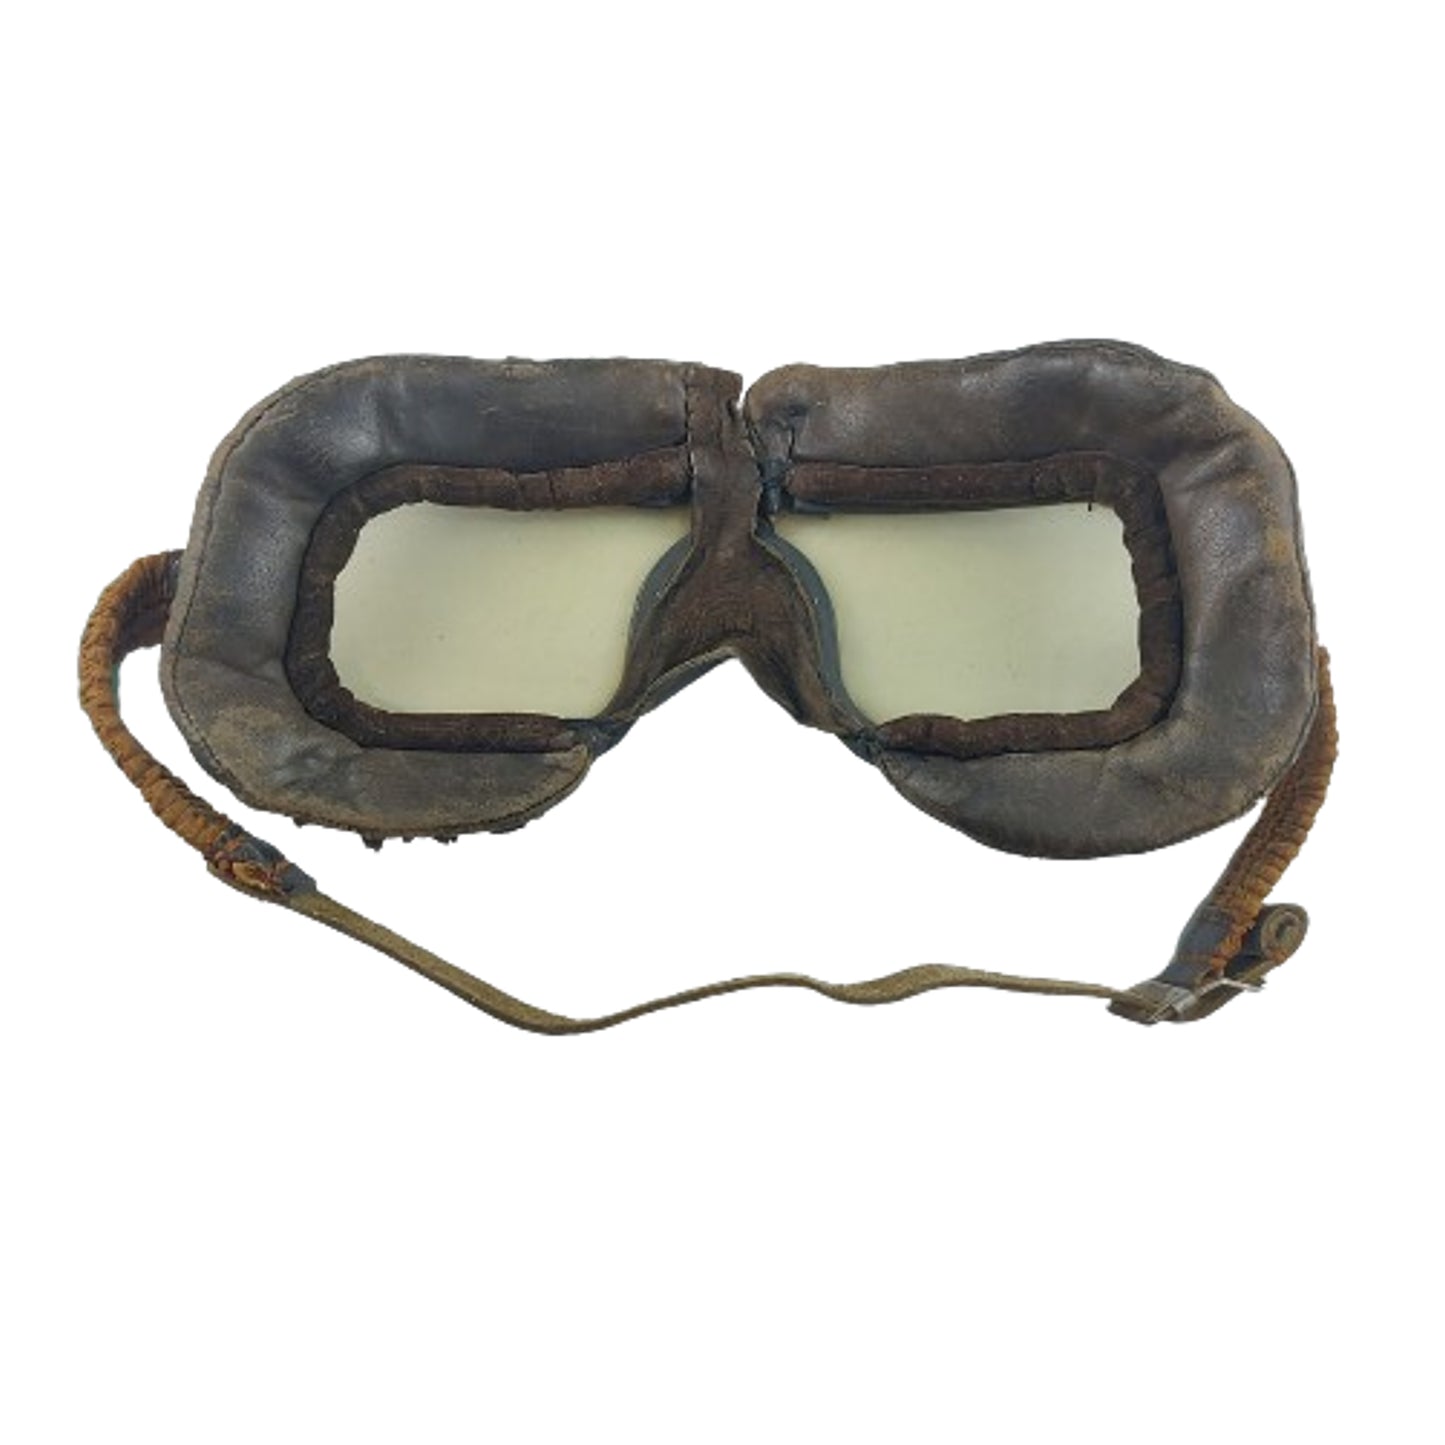 WW2 RAF -RCAF Air Force flight Goggles